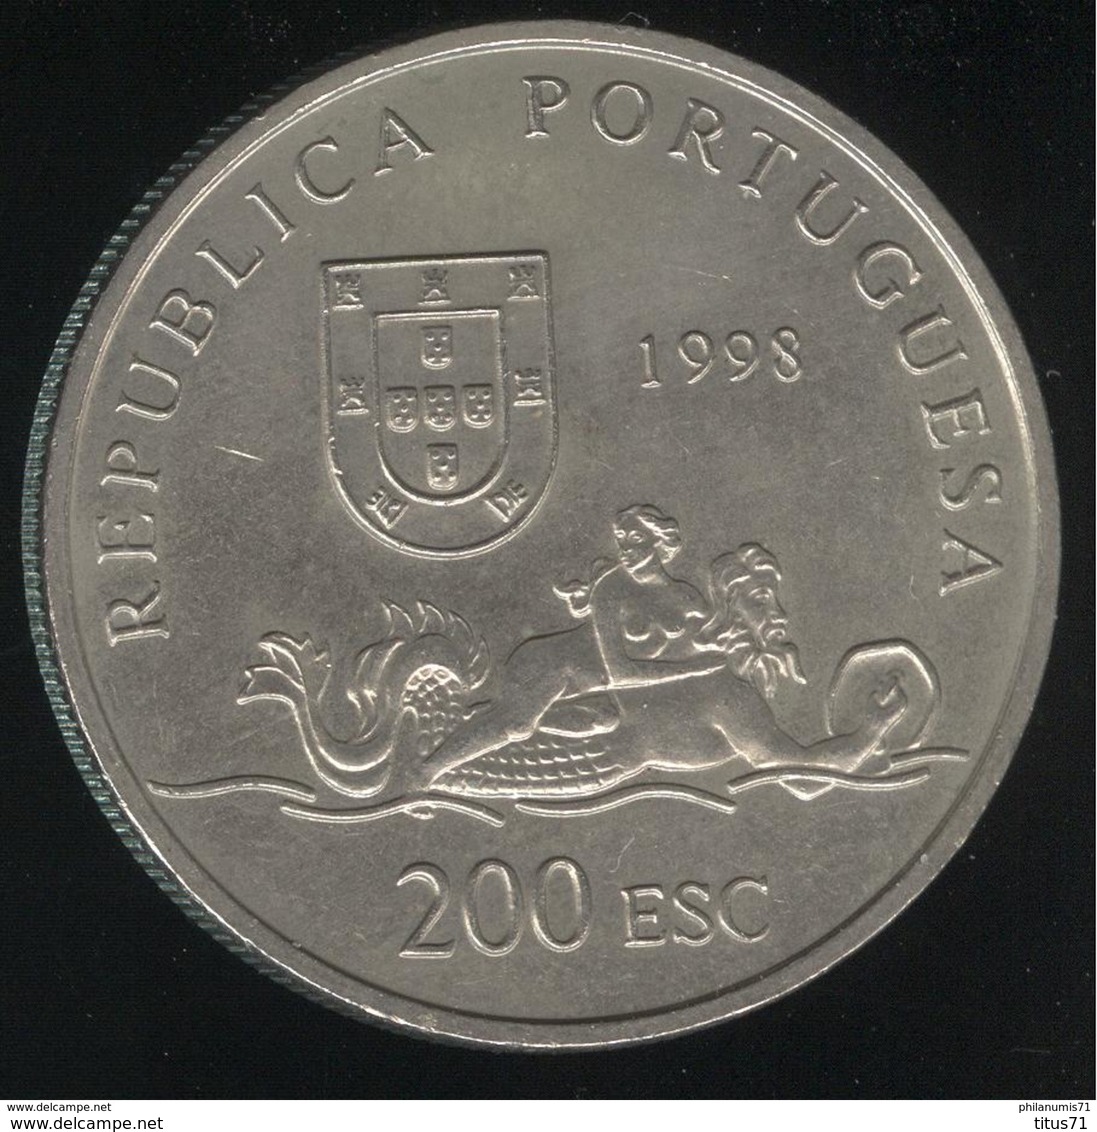 200 Escudos Portugal 1998 - Découverte Du Mozambique - Portugal